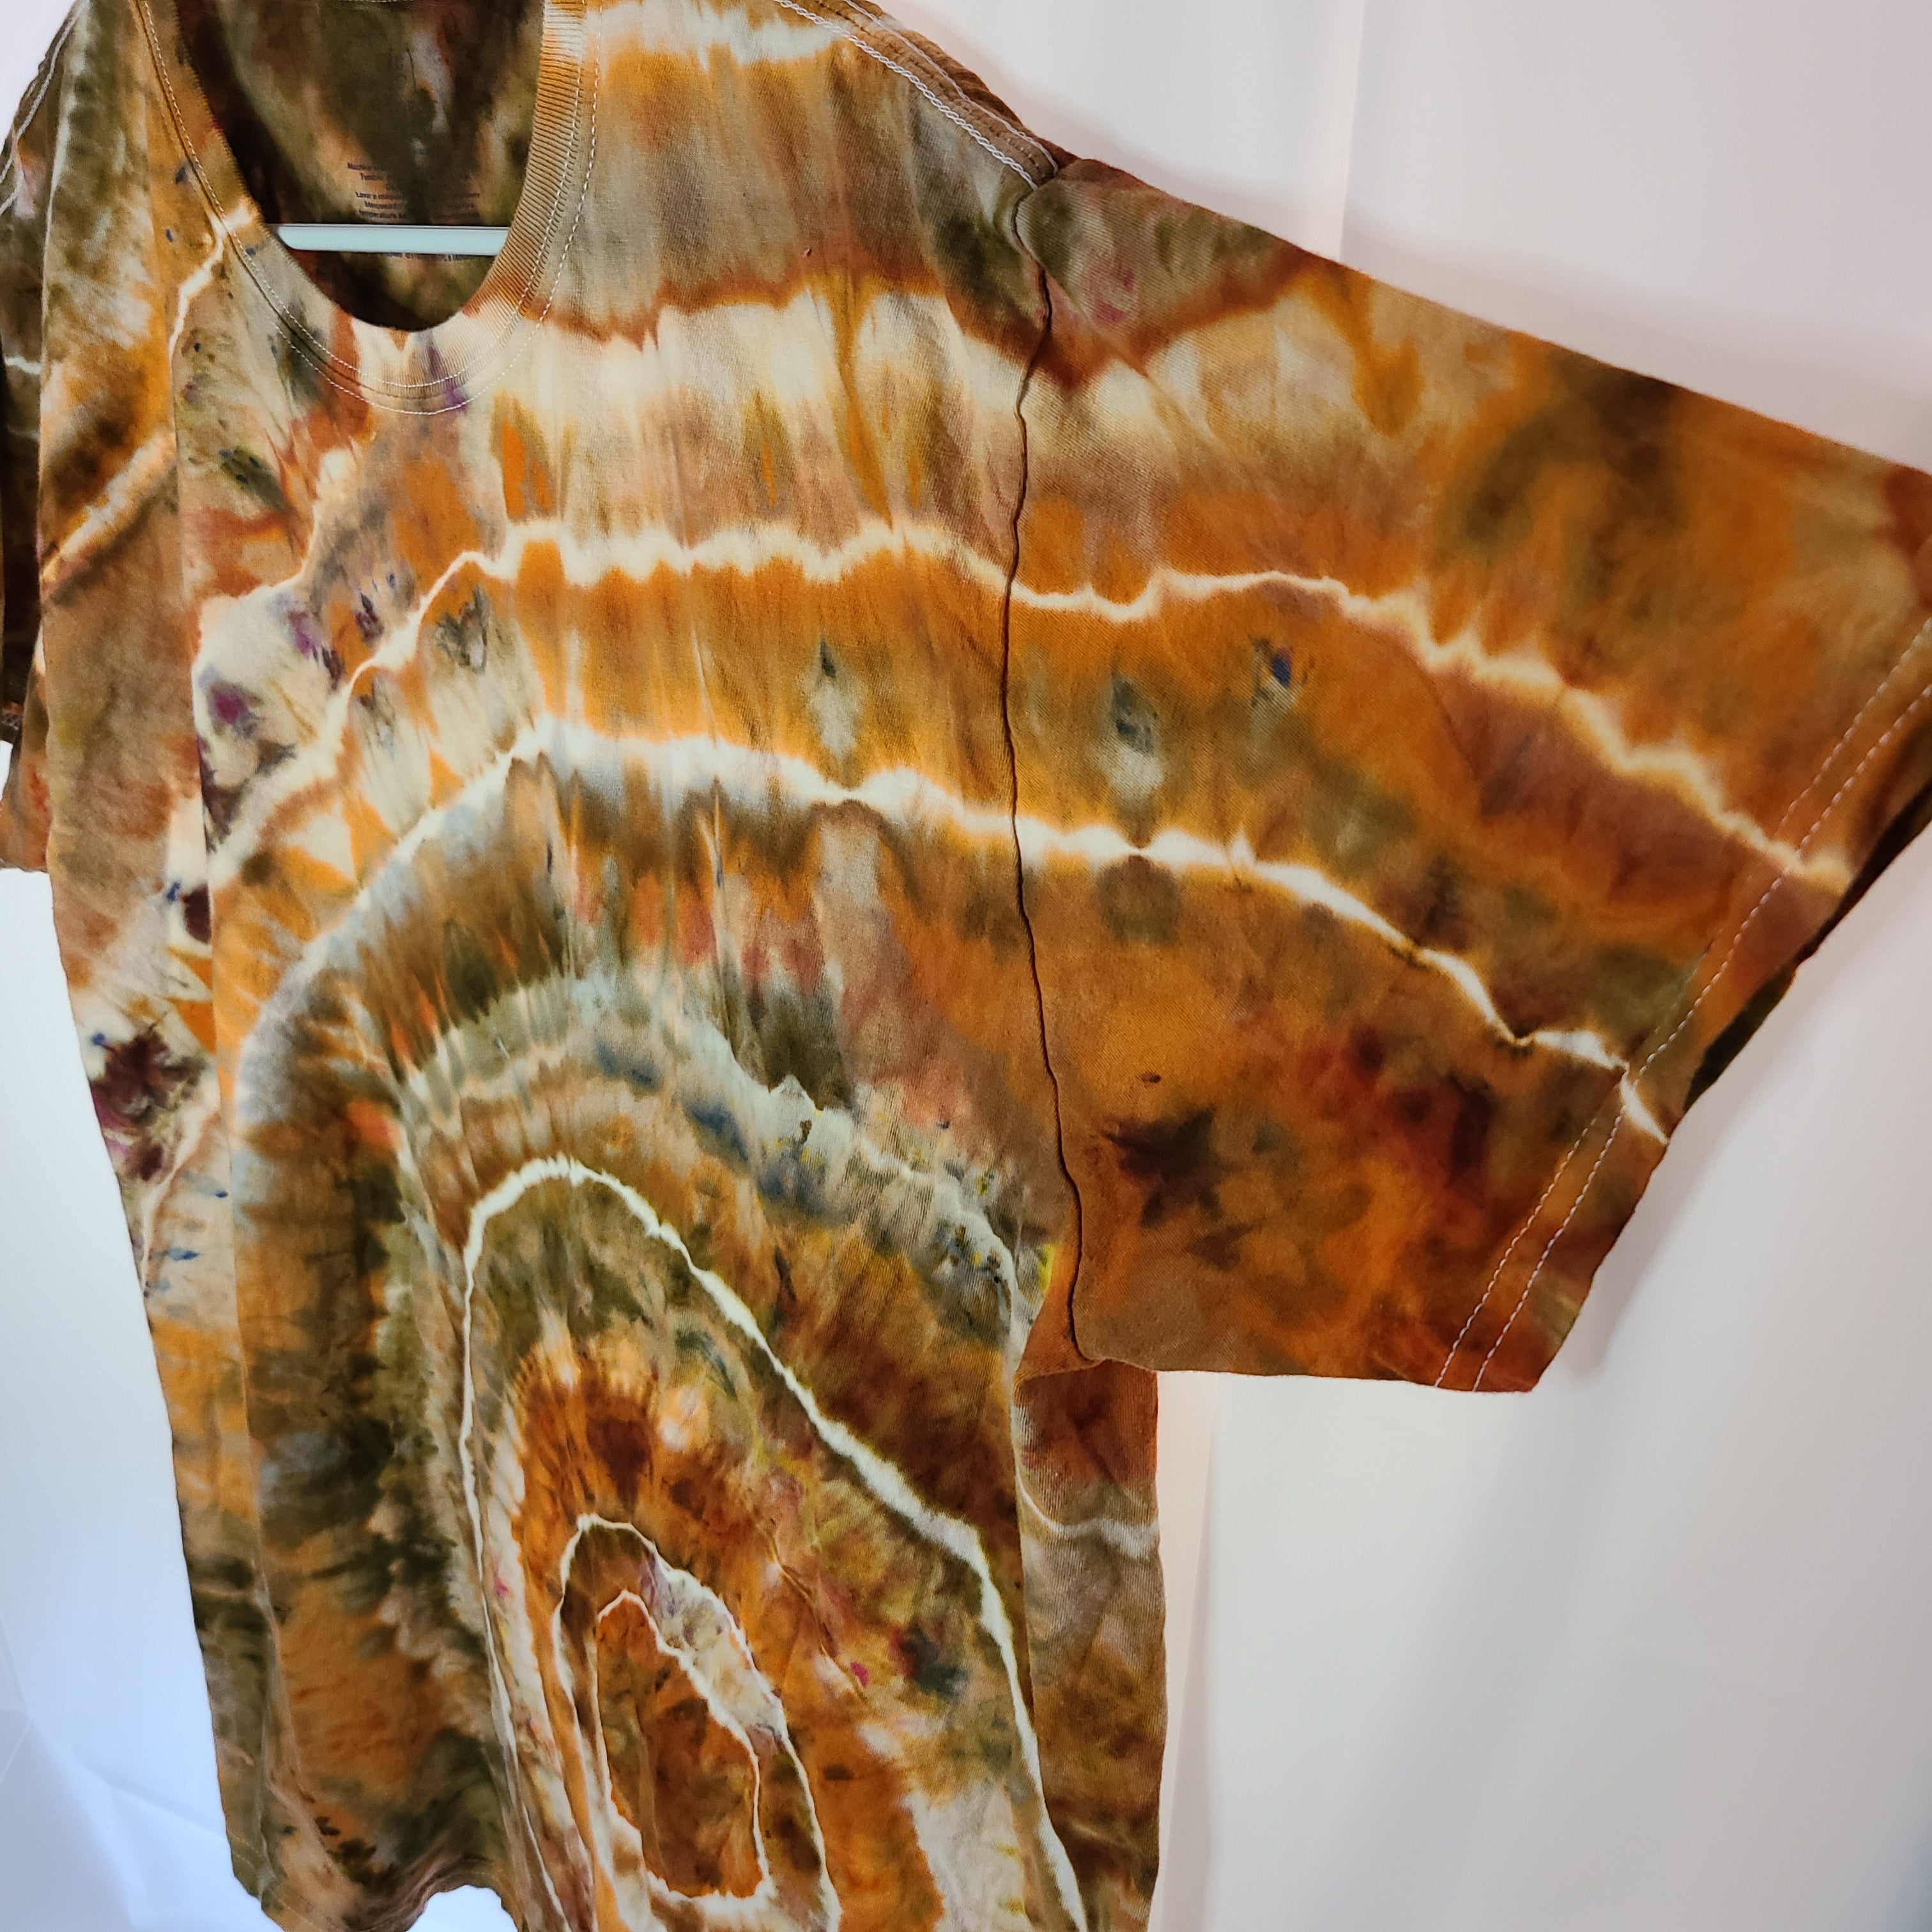 Orange Earth Geode XL Crew Tee Tie Dye – Fresh Frozen Dyes